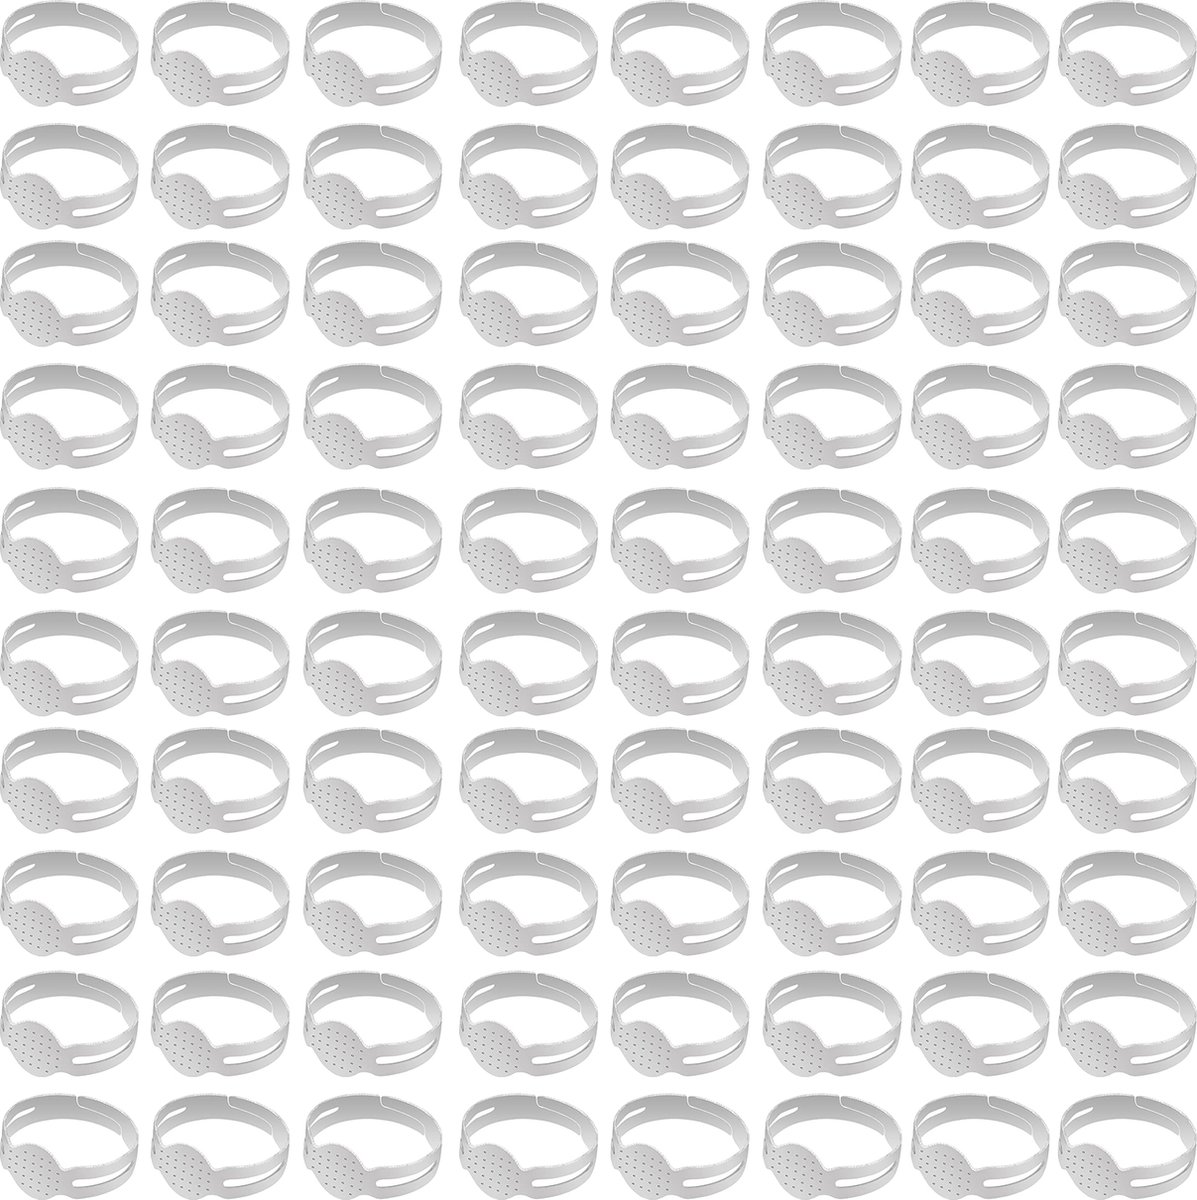 Kurtzy 80 Stuks Verstelbare Blanco Metalen Ringbases – Ringbasis voor het Zelf Maken van Sieraden - Verzilverde Ringen - Ringblanks met Plakstrip voor Juwelen/edelstenen of Sierstenen (Cabochons)